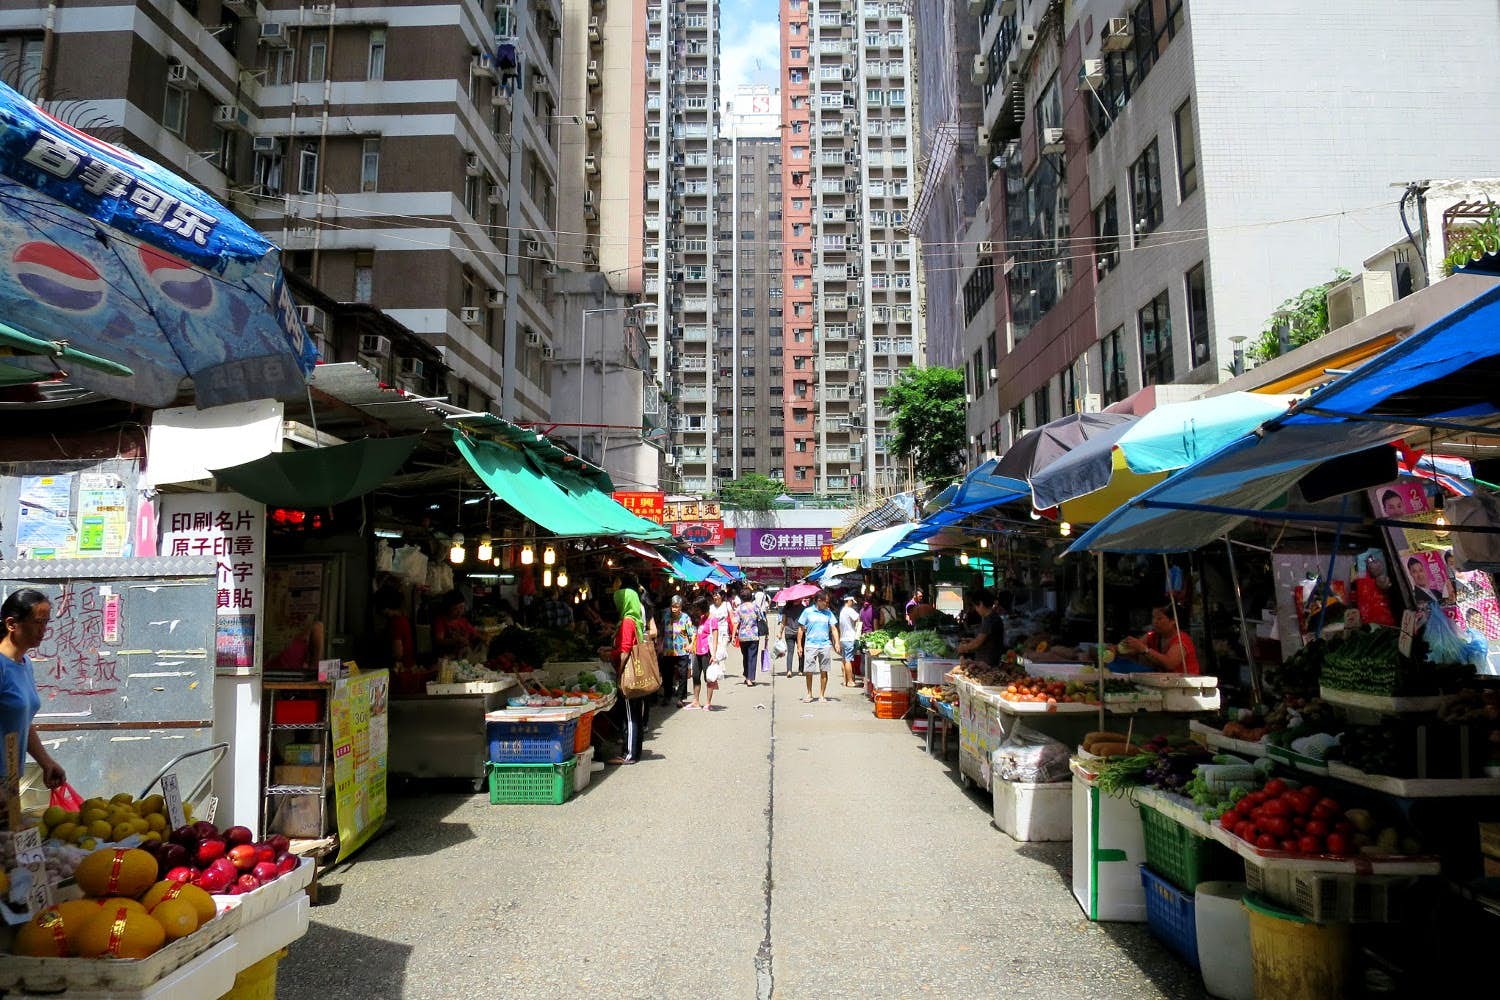 Les meilleures activités gratuites à faire à Hong Kong 